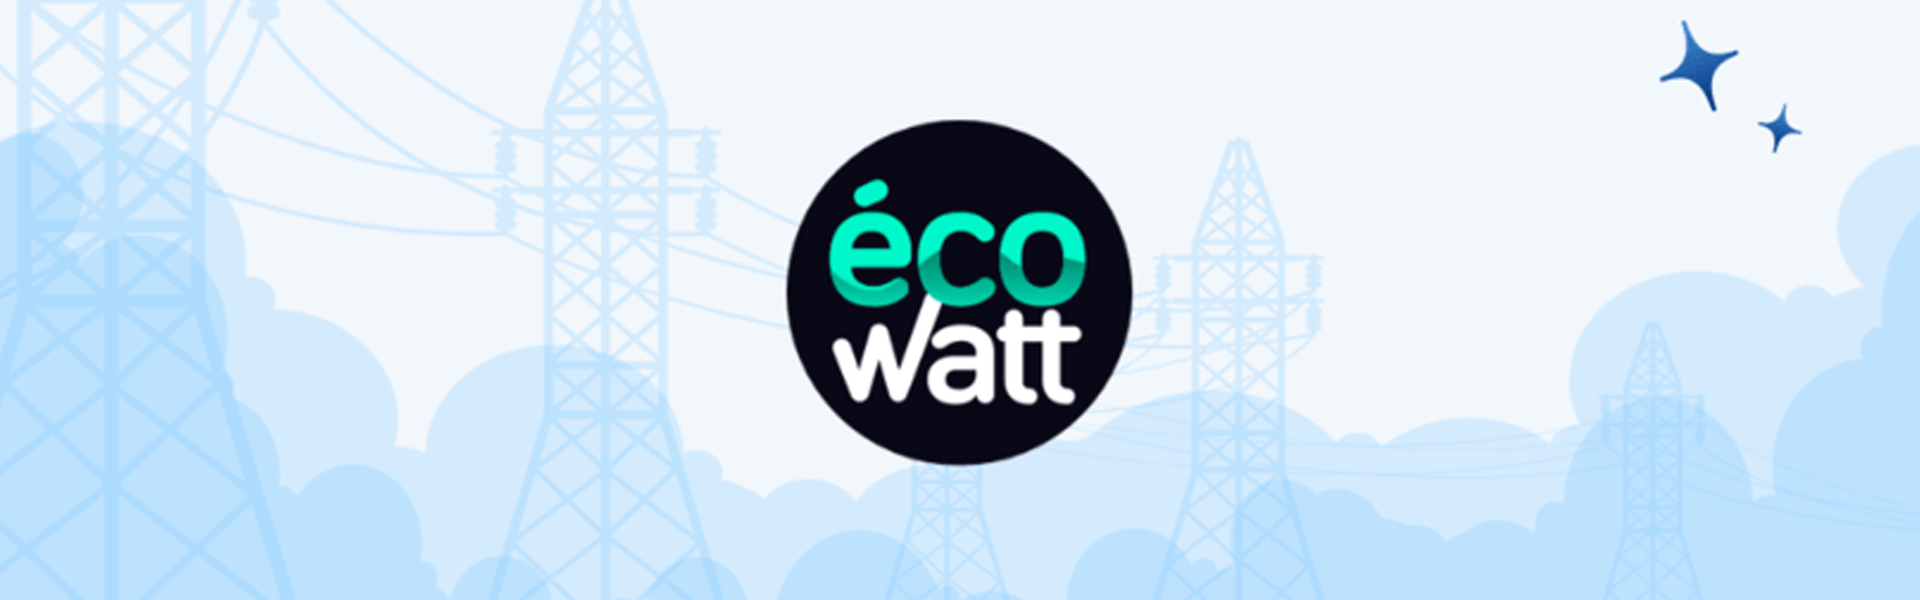 Écowatt : un outil pour une consommation responsable de l'électricité